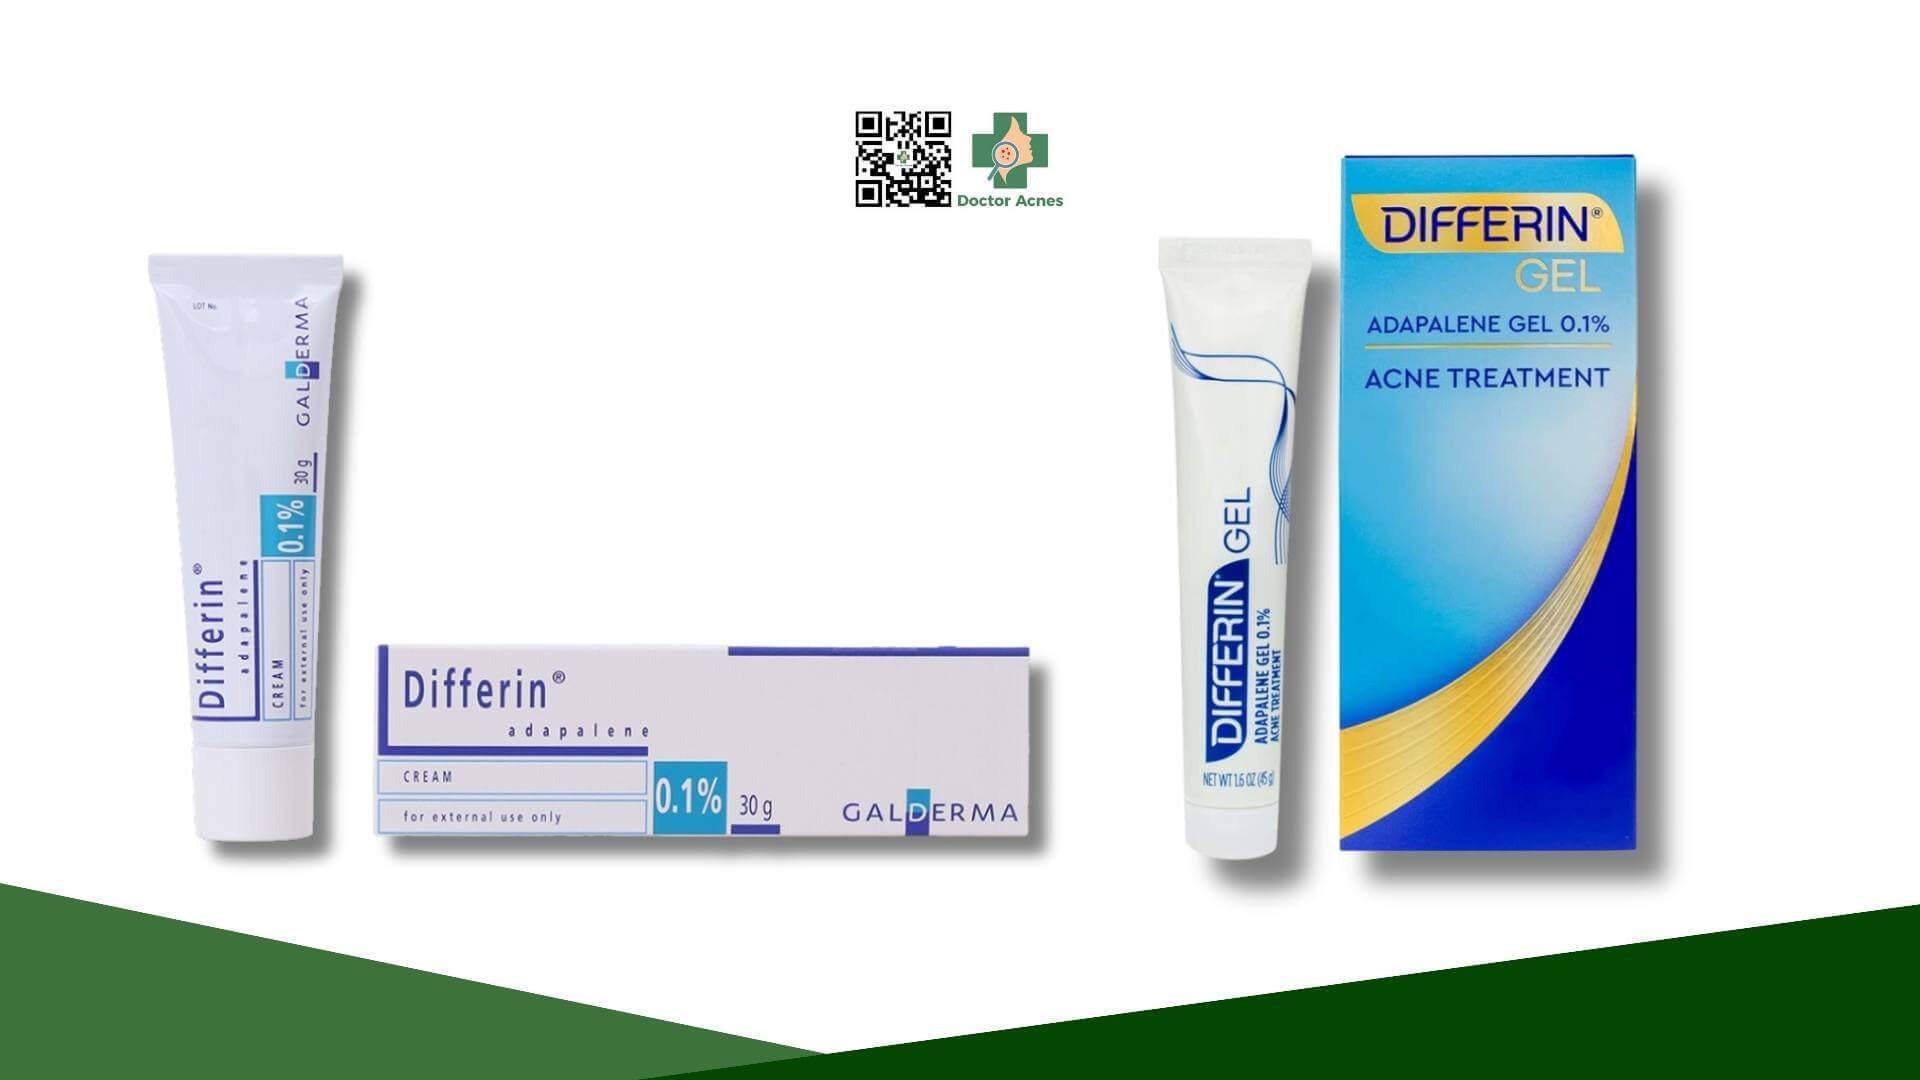 differin 0.1% cream và gel chứa cùng hoạt chất adapalene 0.1%